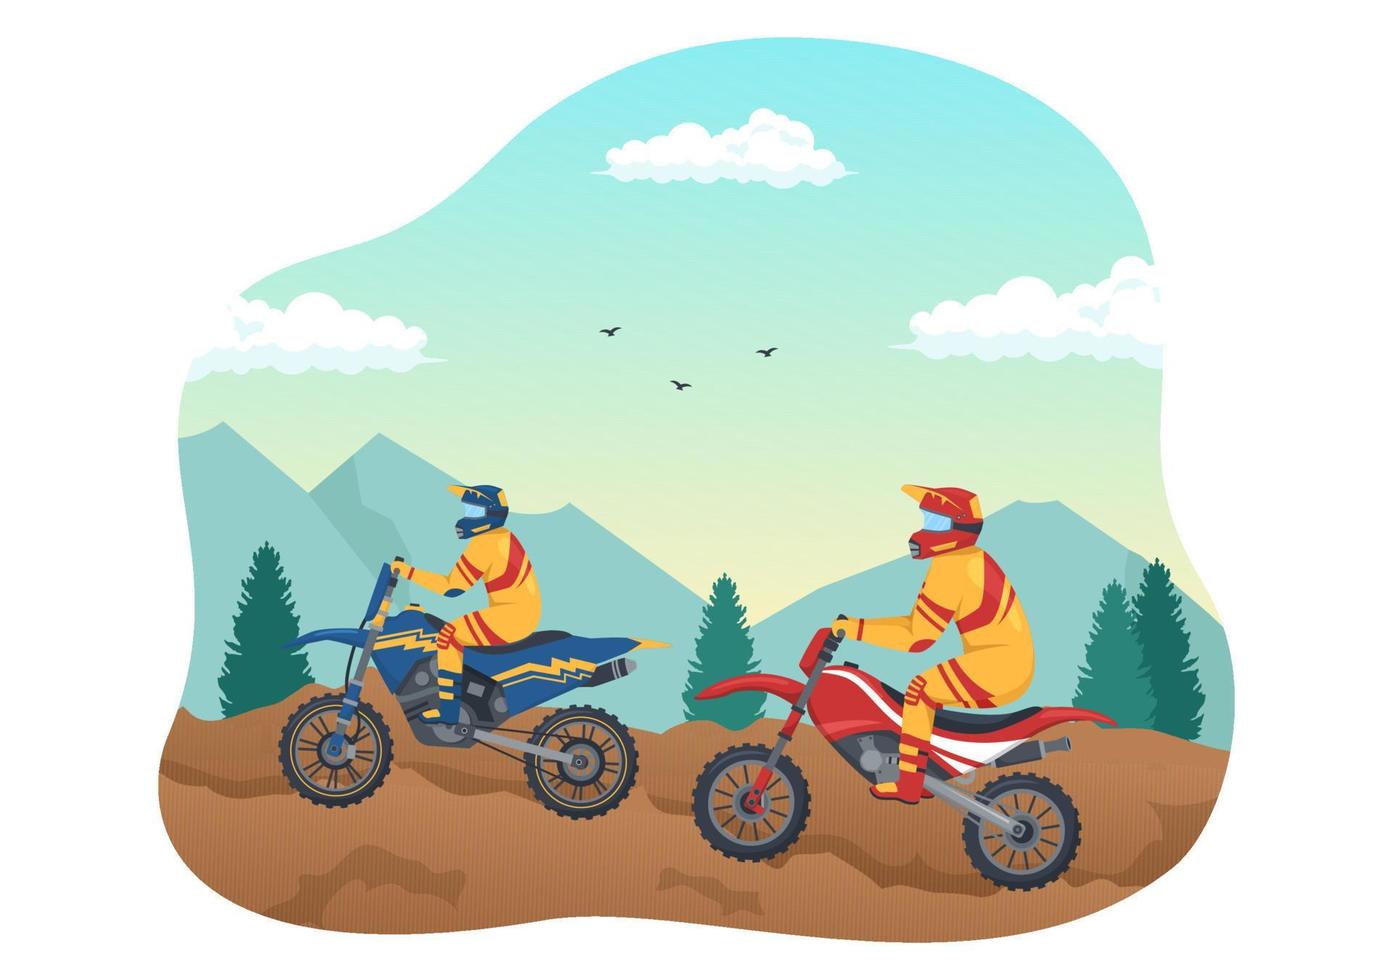 ilustración de motocross con un ciclista en bicicleta a través de barro, caminos rocosos y aventura en una plantilla dibujada a mano de dibujos animados planos de deporte extremo vector